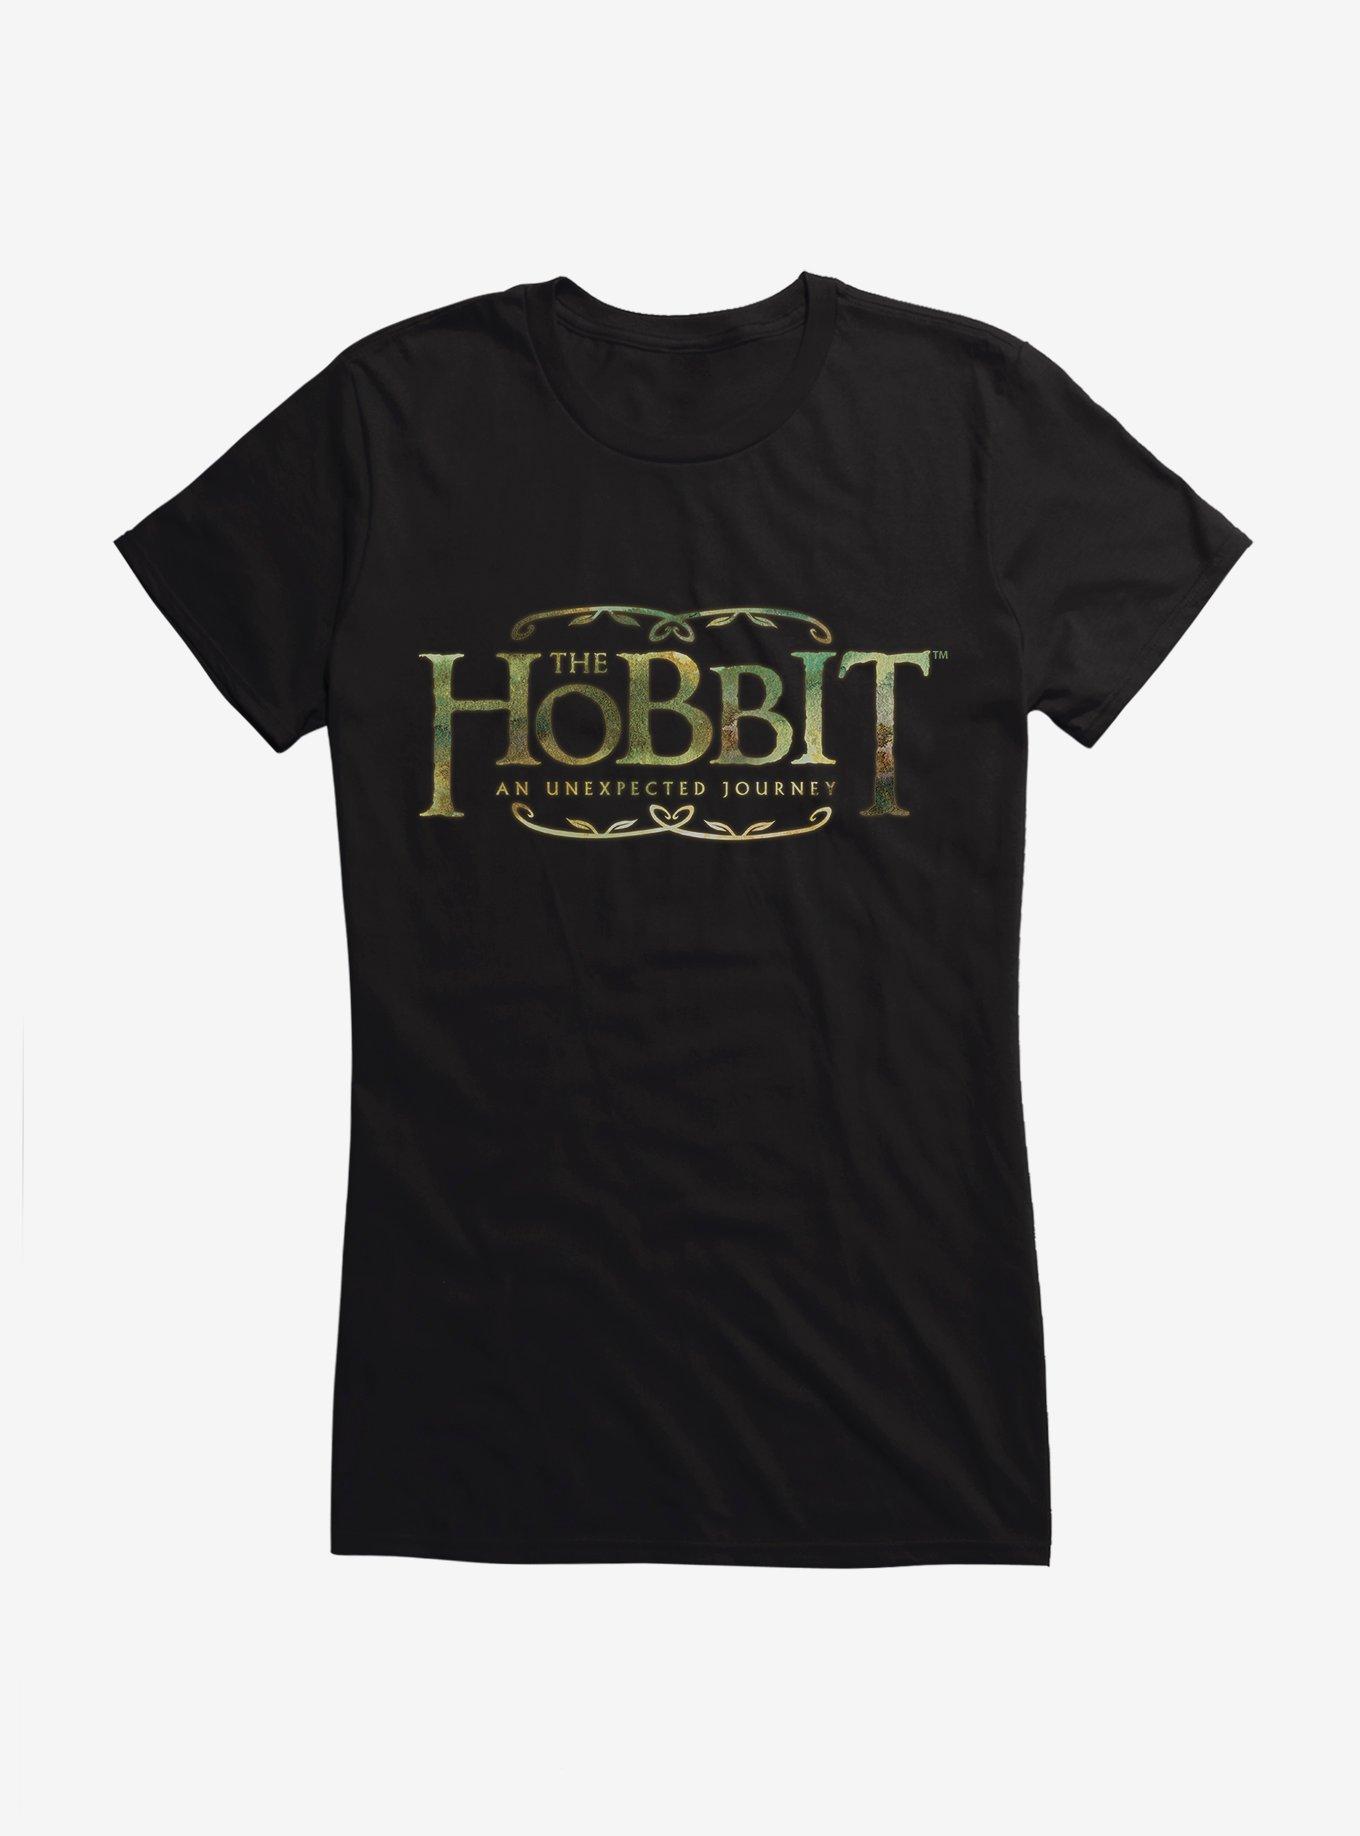 The Hobbit: An Unexpected Journey Title Logo Girls T-Shirt